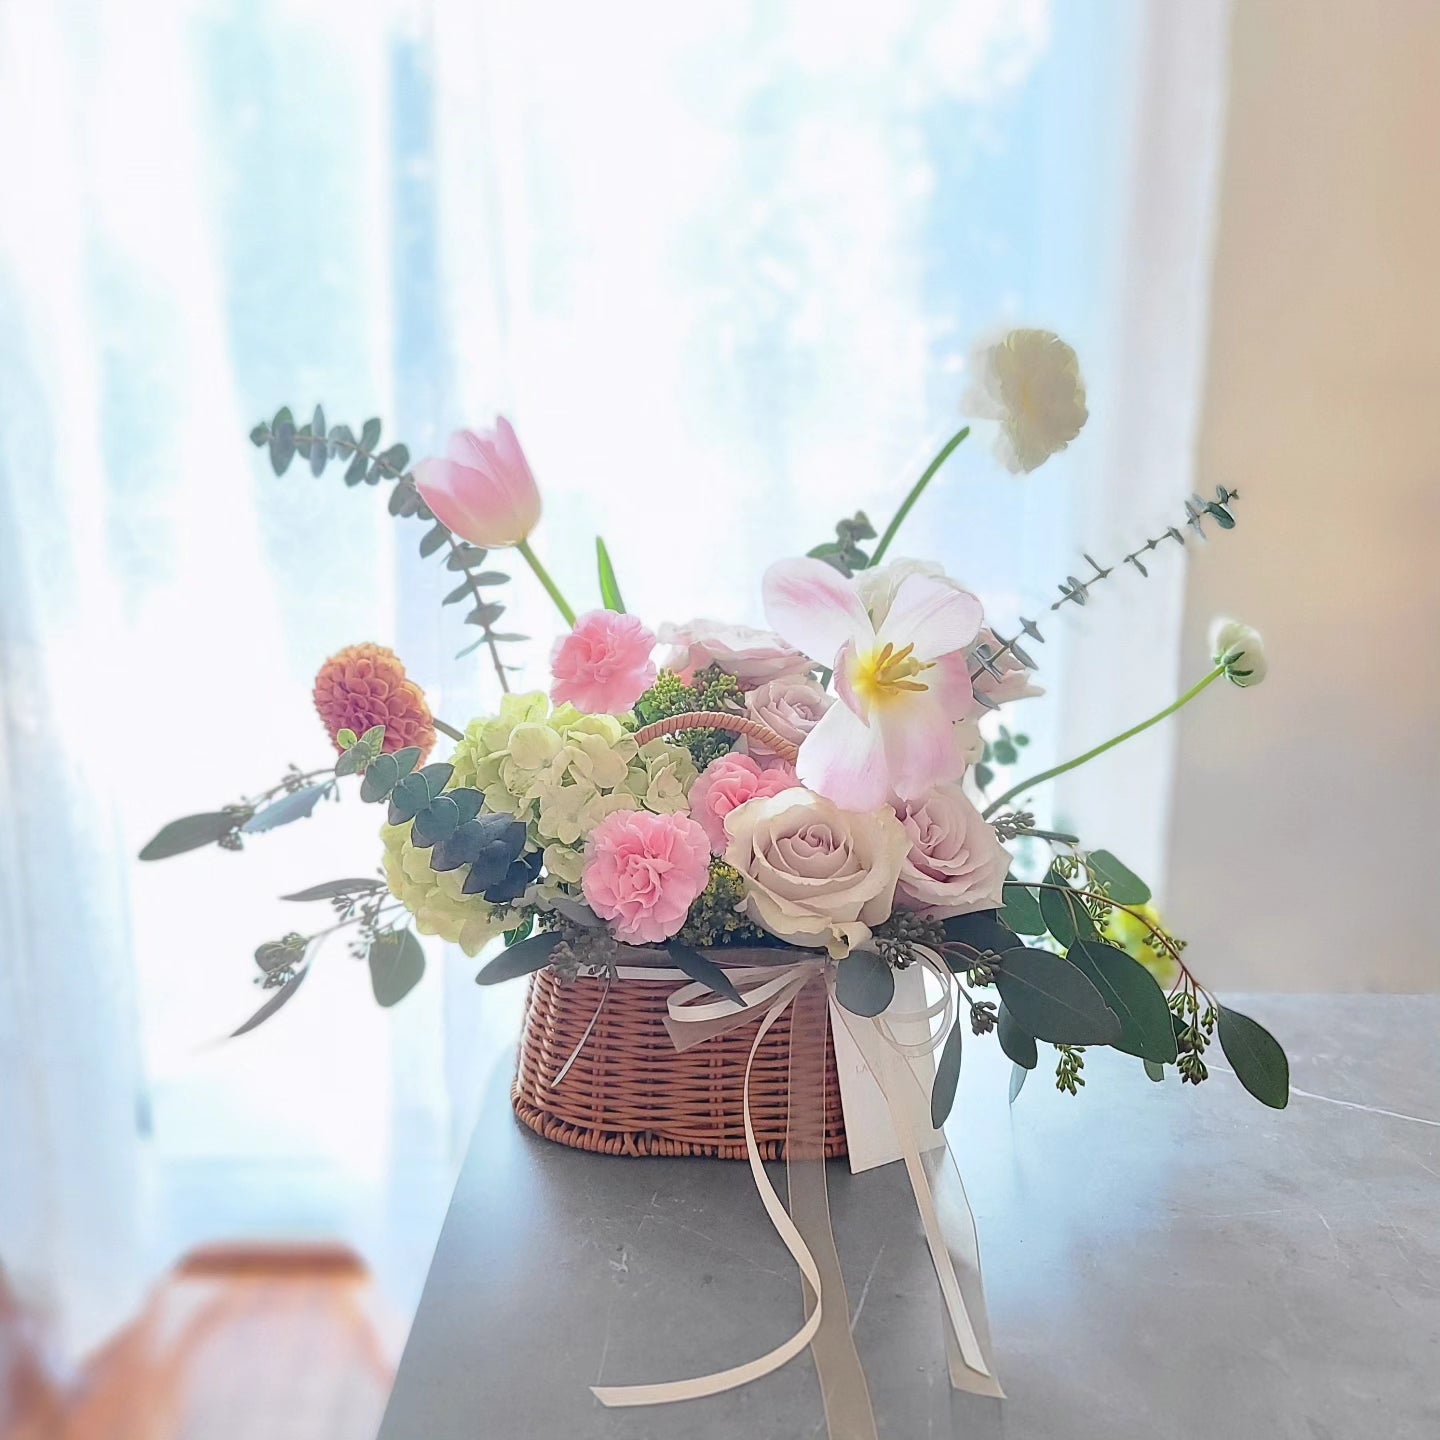 Small sweet flower basket